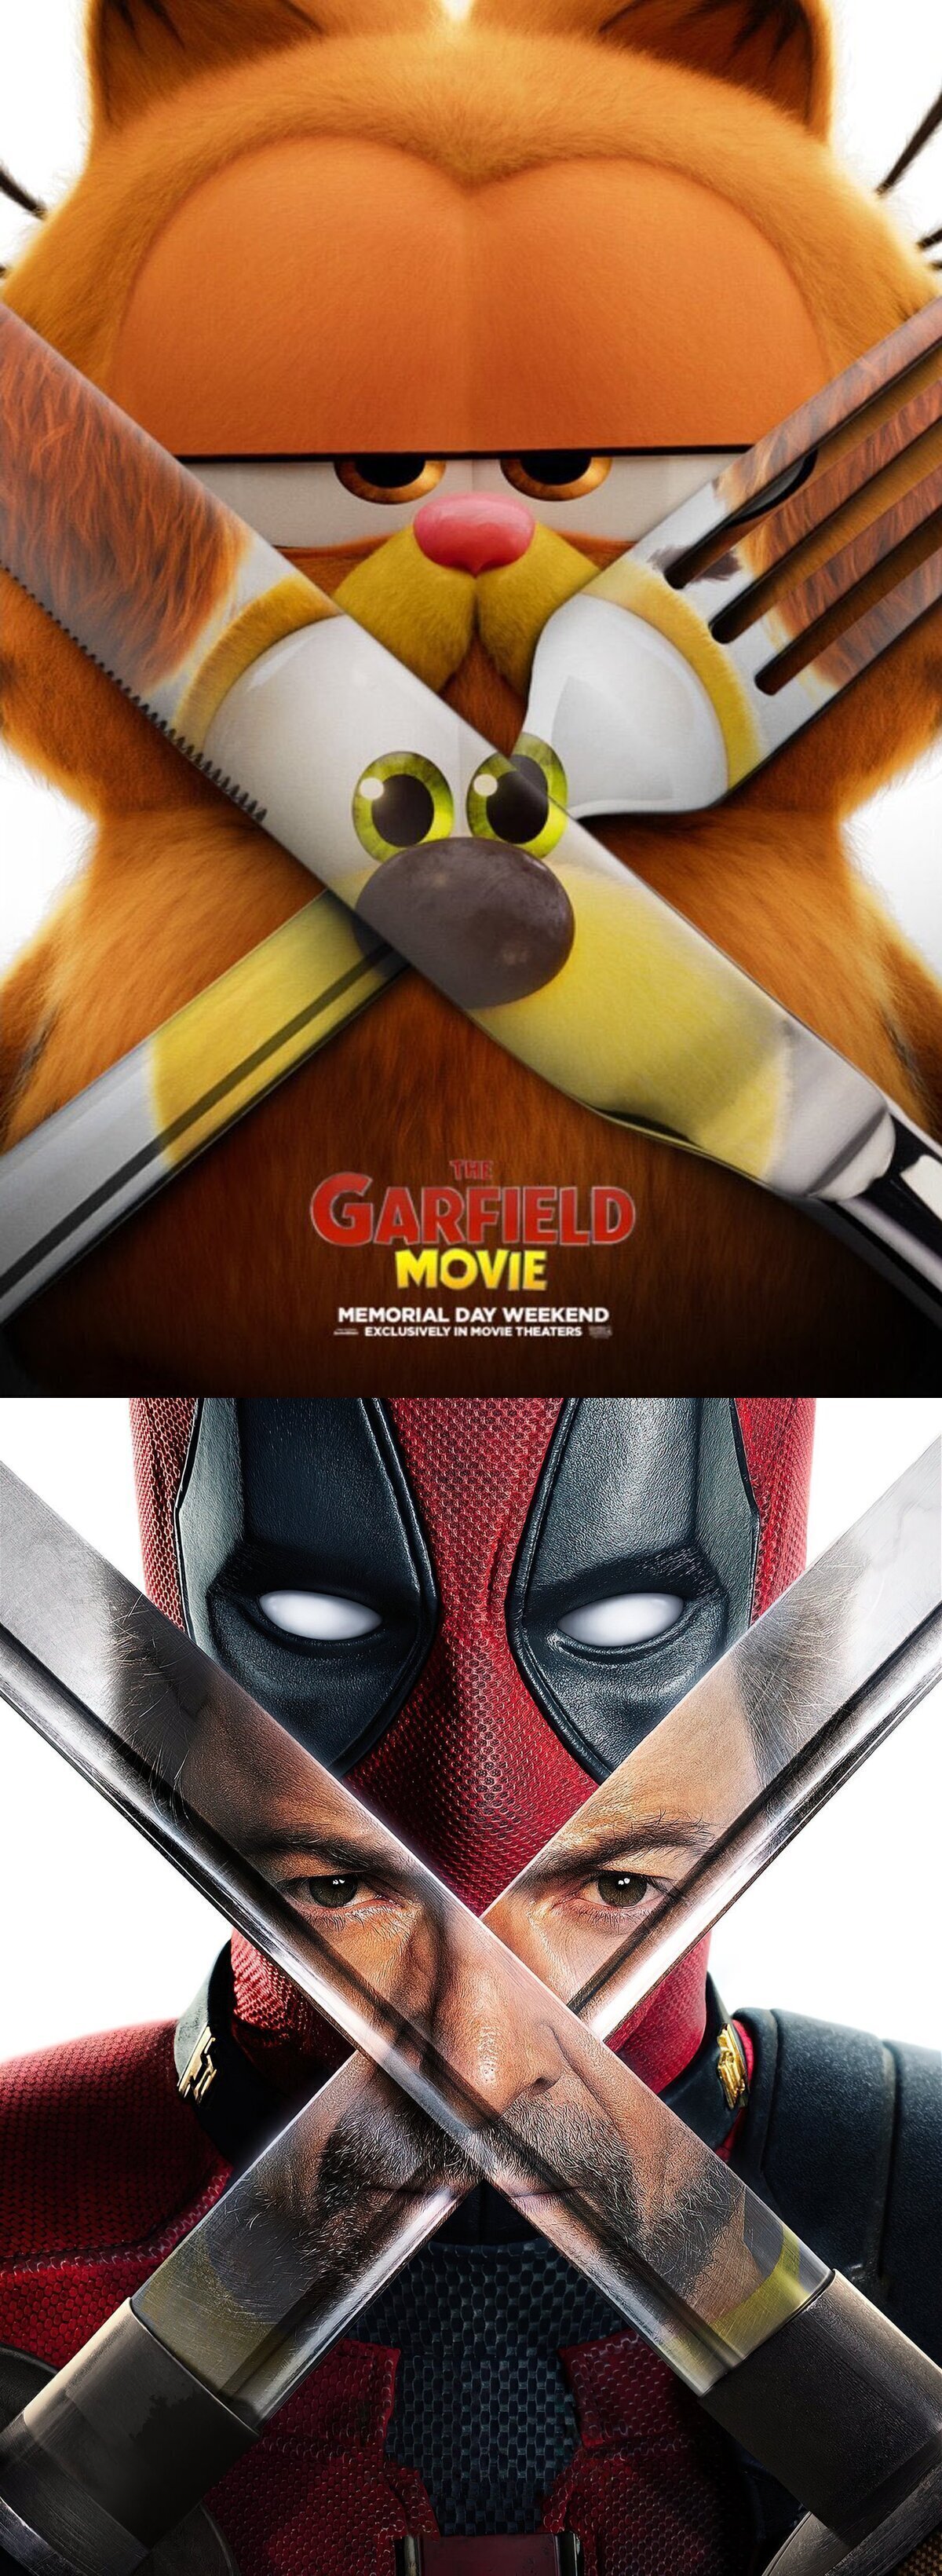 Nuevo poster de Garfield a lo Deadpool